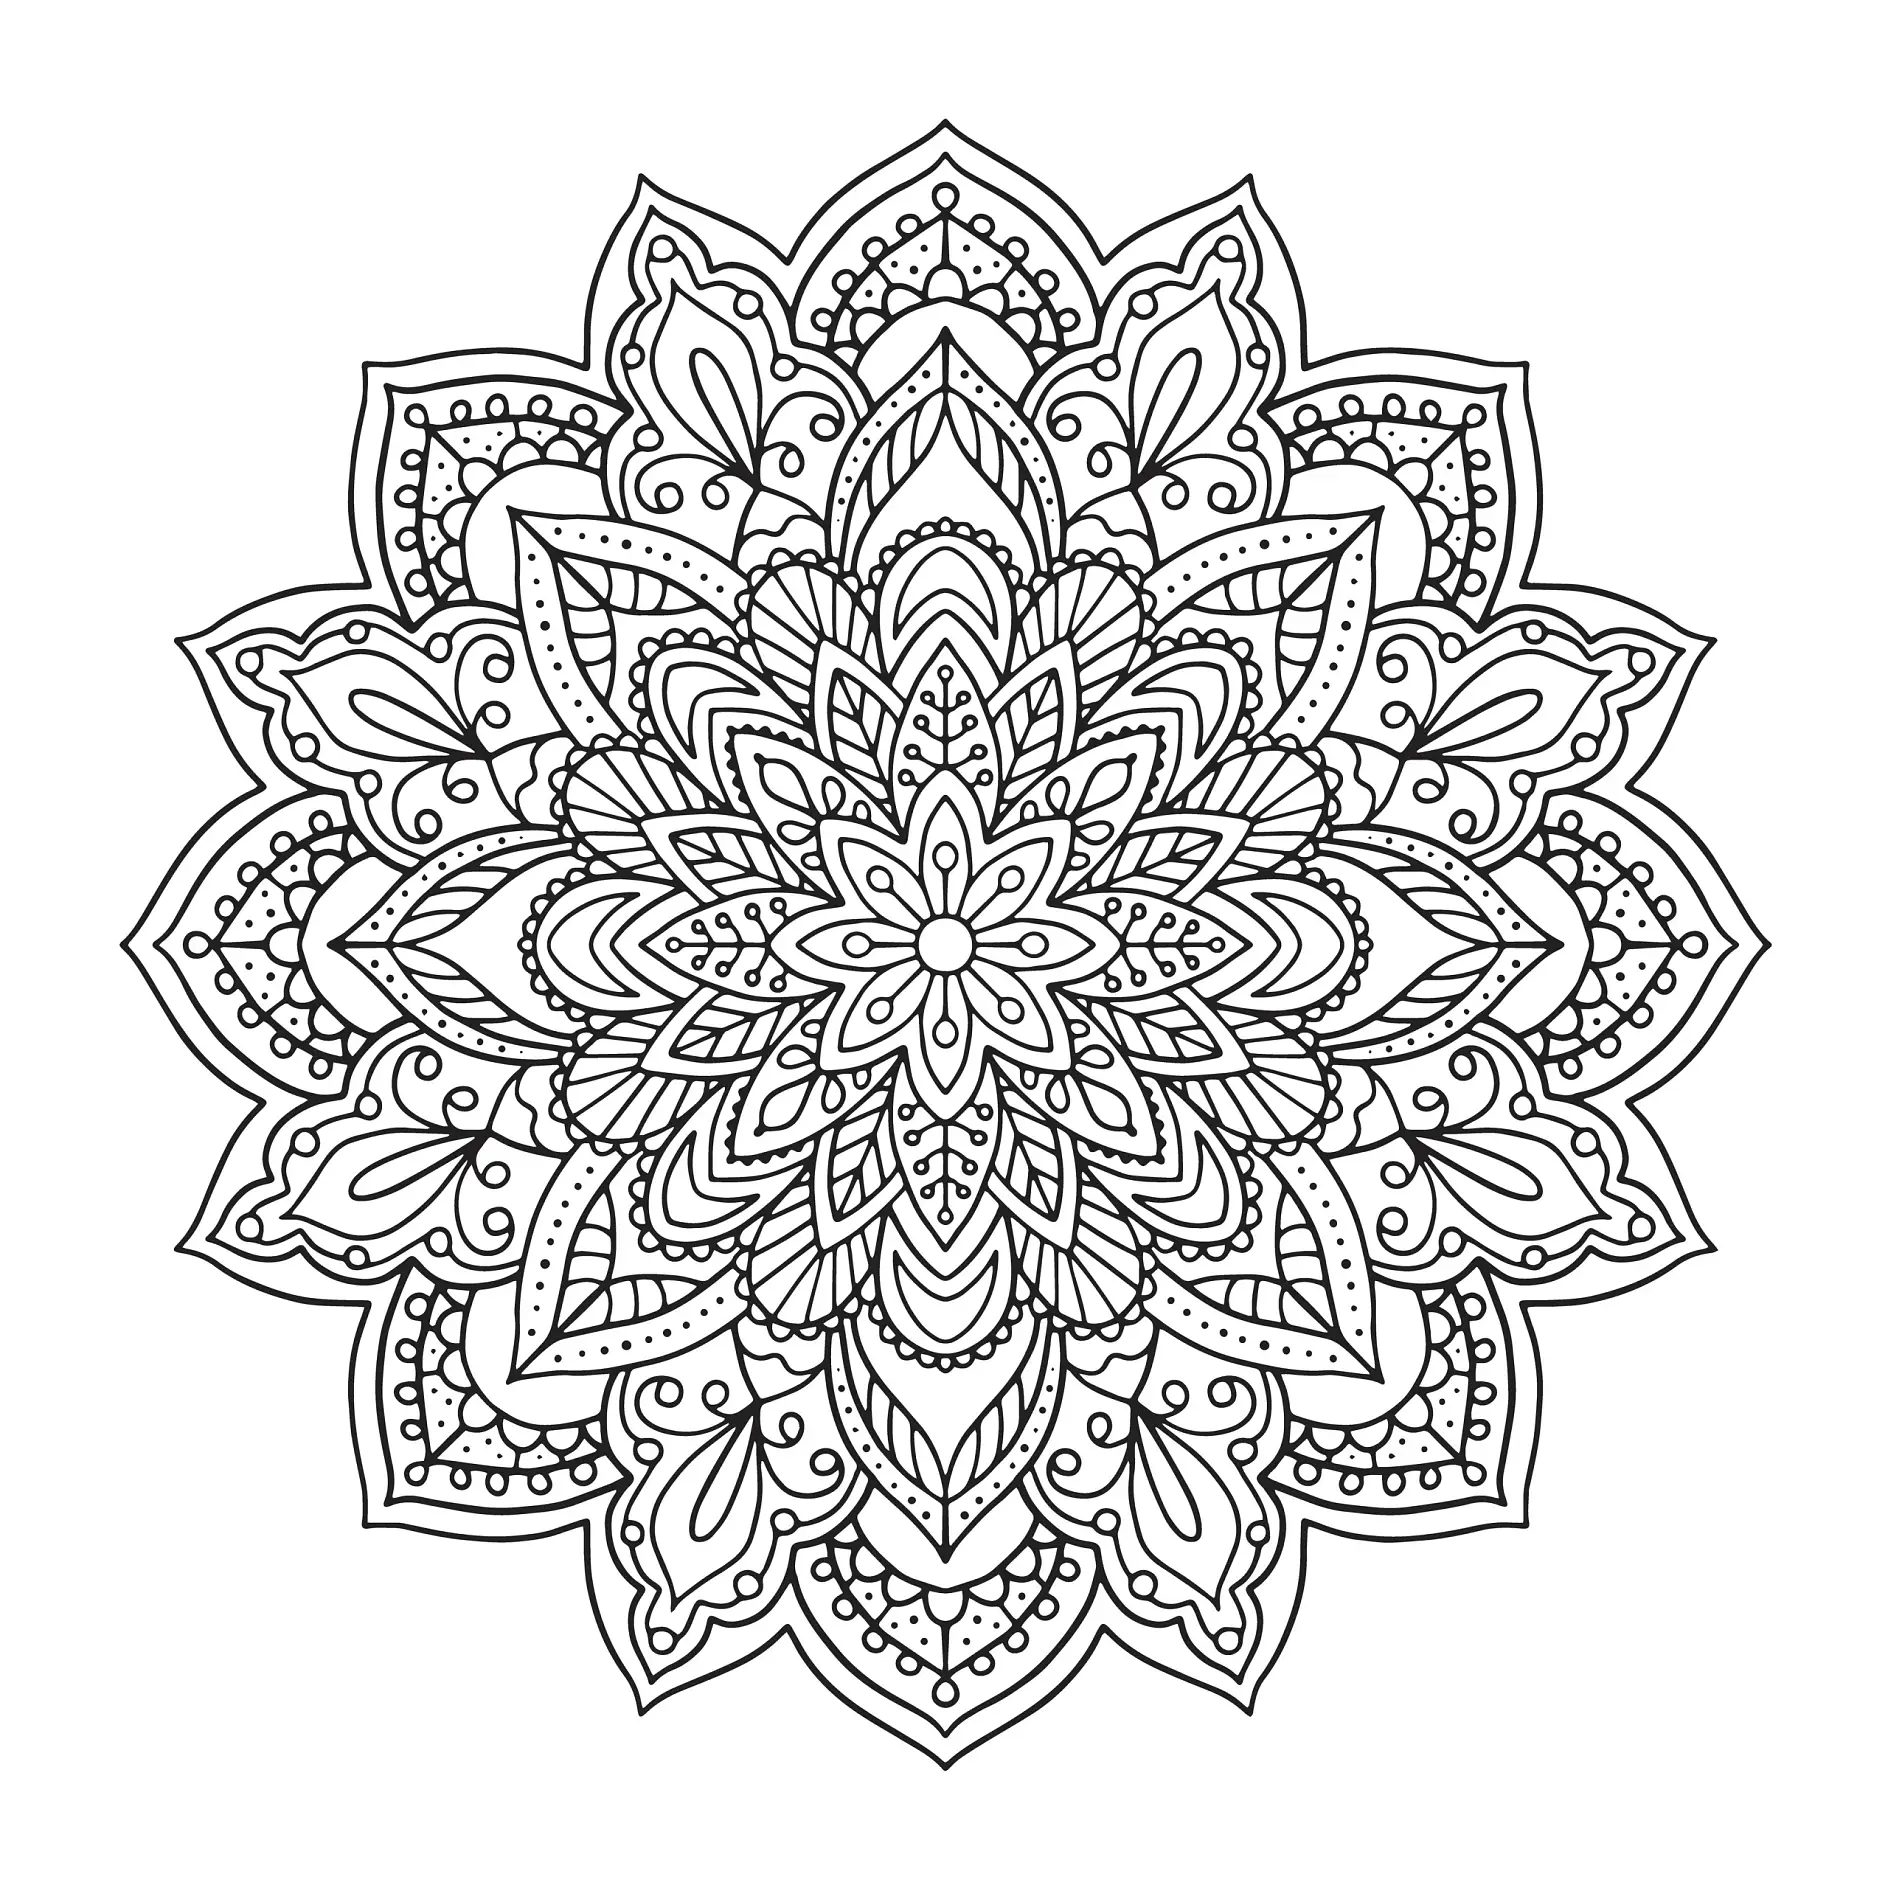 Ausmalbild Mandala mit Blumen und komplexen floralen Mustern und Details